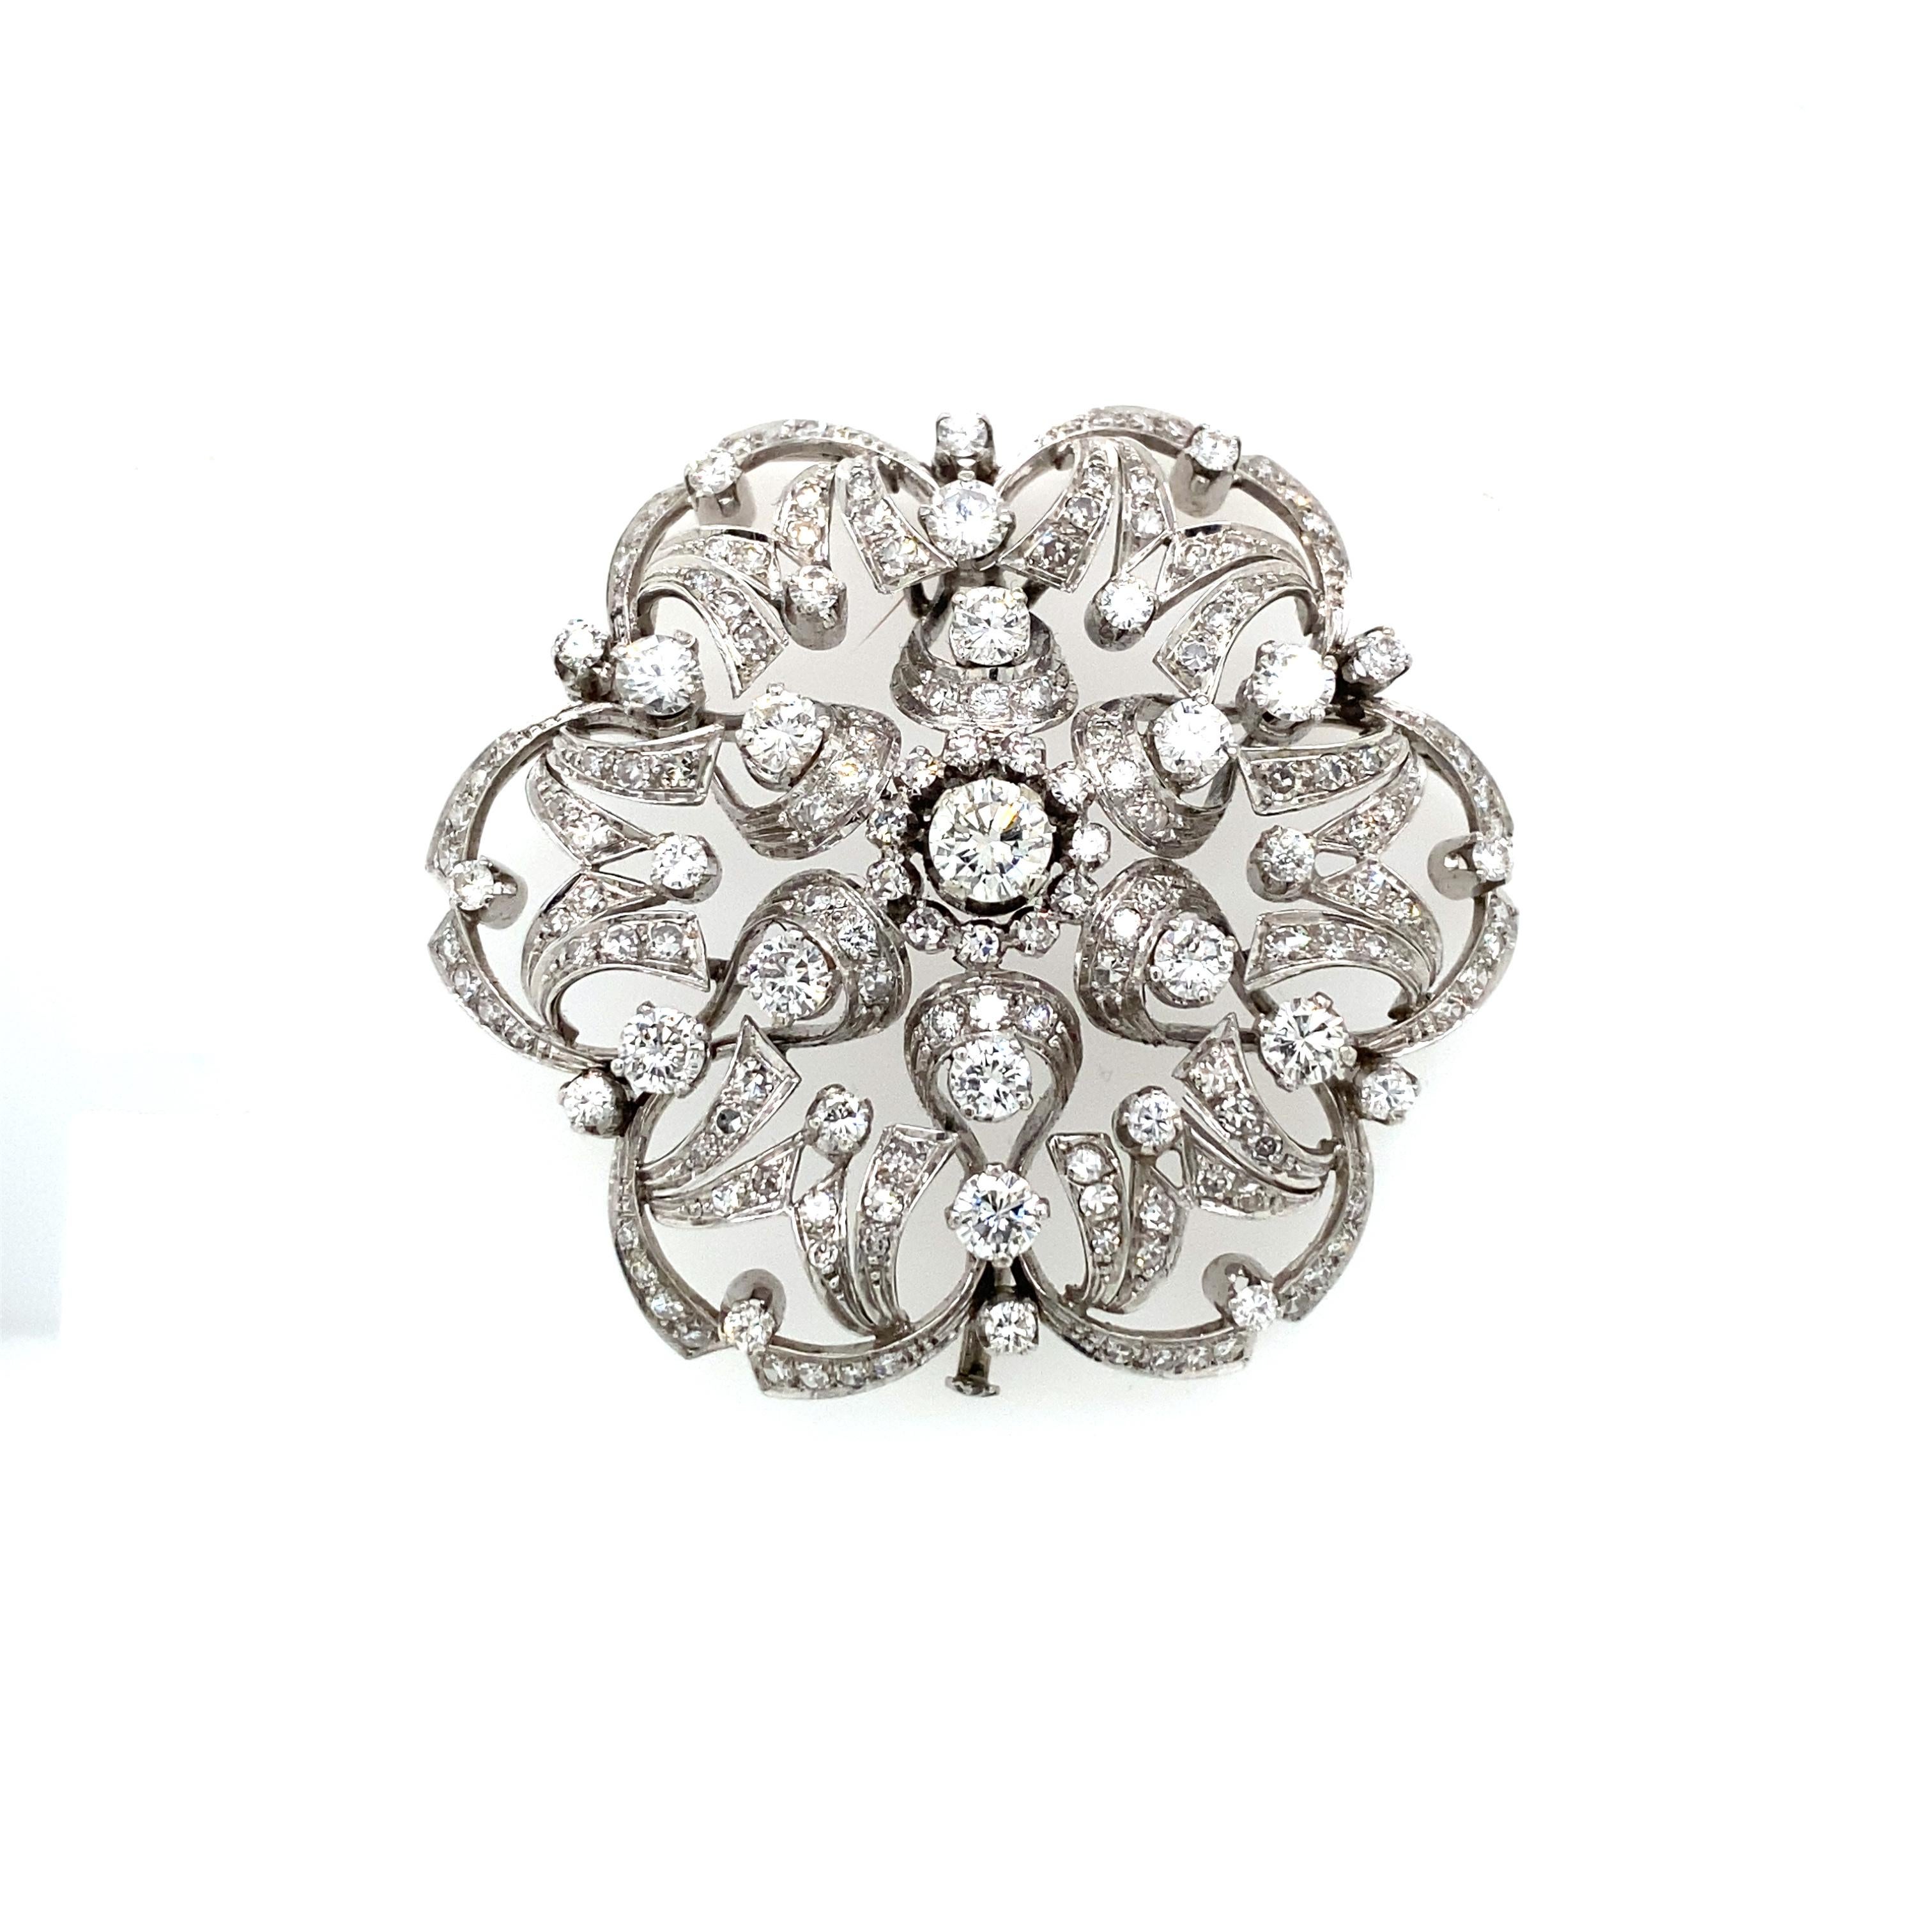 Importante broche fleur en or blanc 18 carats, poinçonnée 652 AL (Valenza), sertie d'environ 5,50 ct. de diamants ronds de taille brillant de couleur G et de pureté VVS. Cette pièce est conçue et fabriquée entièrement à la main de manière